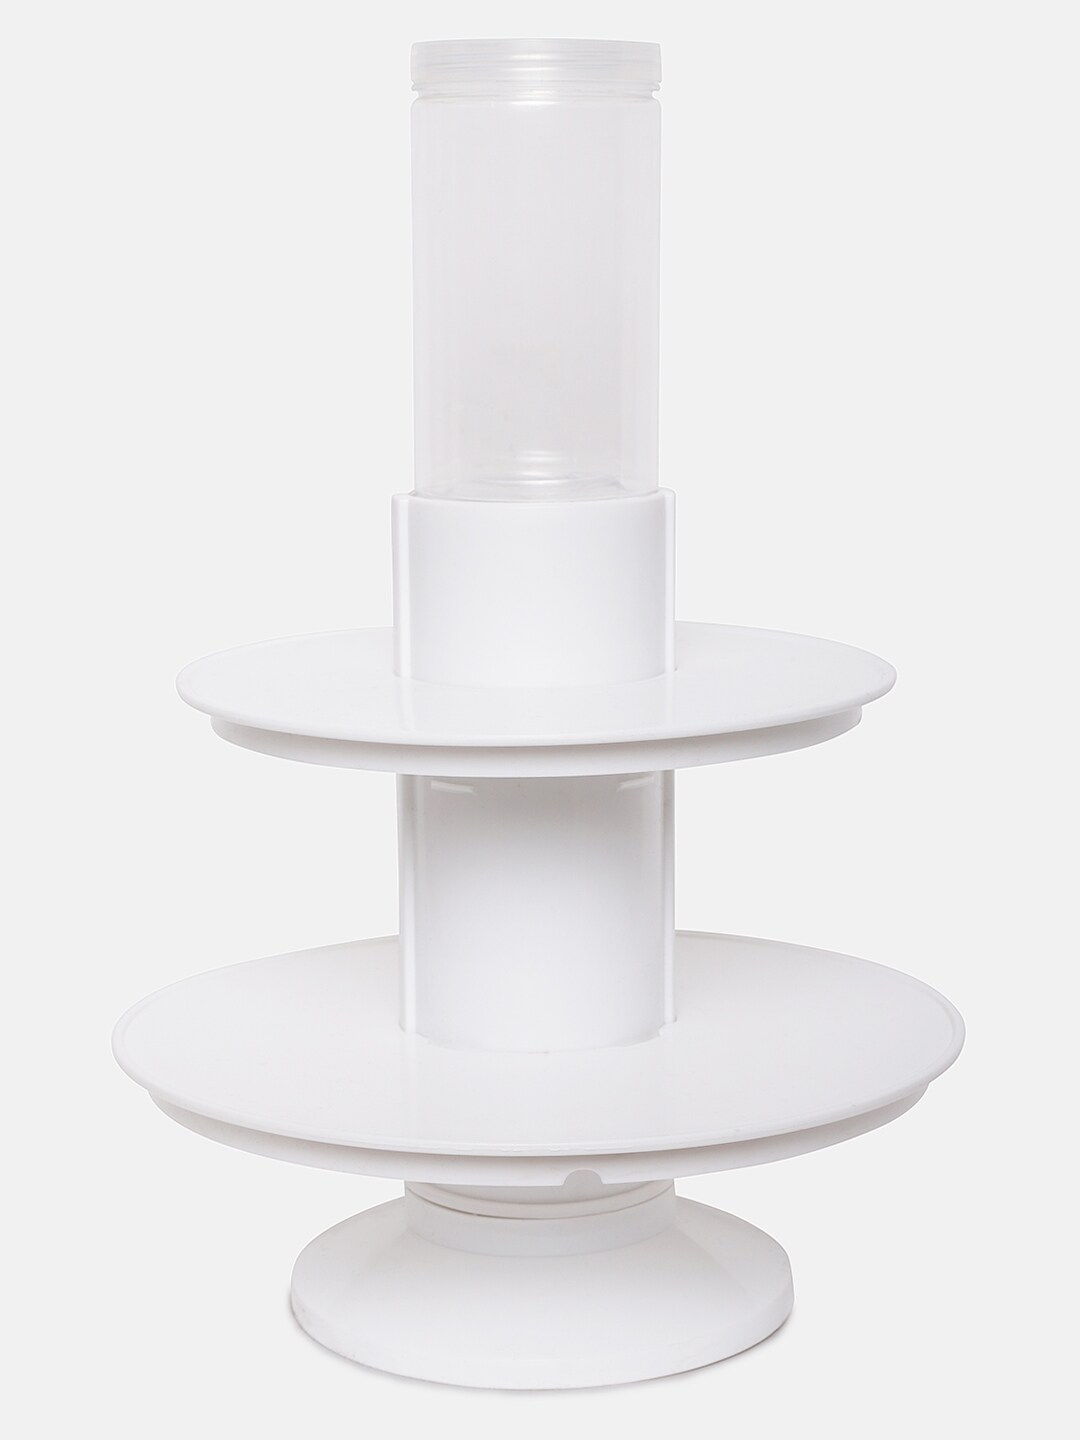 FineDecor White Plastic 2 Layer Surprise Cake Stand 8 inch & 10 inch Price in India